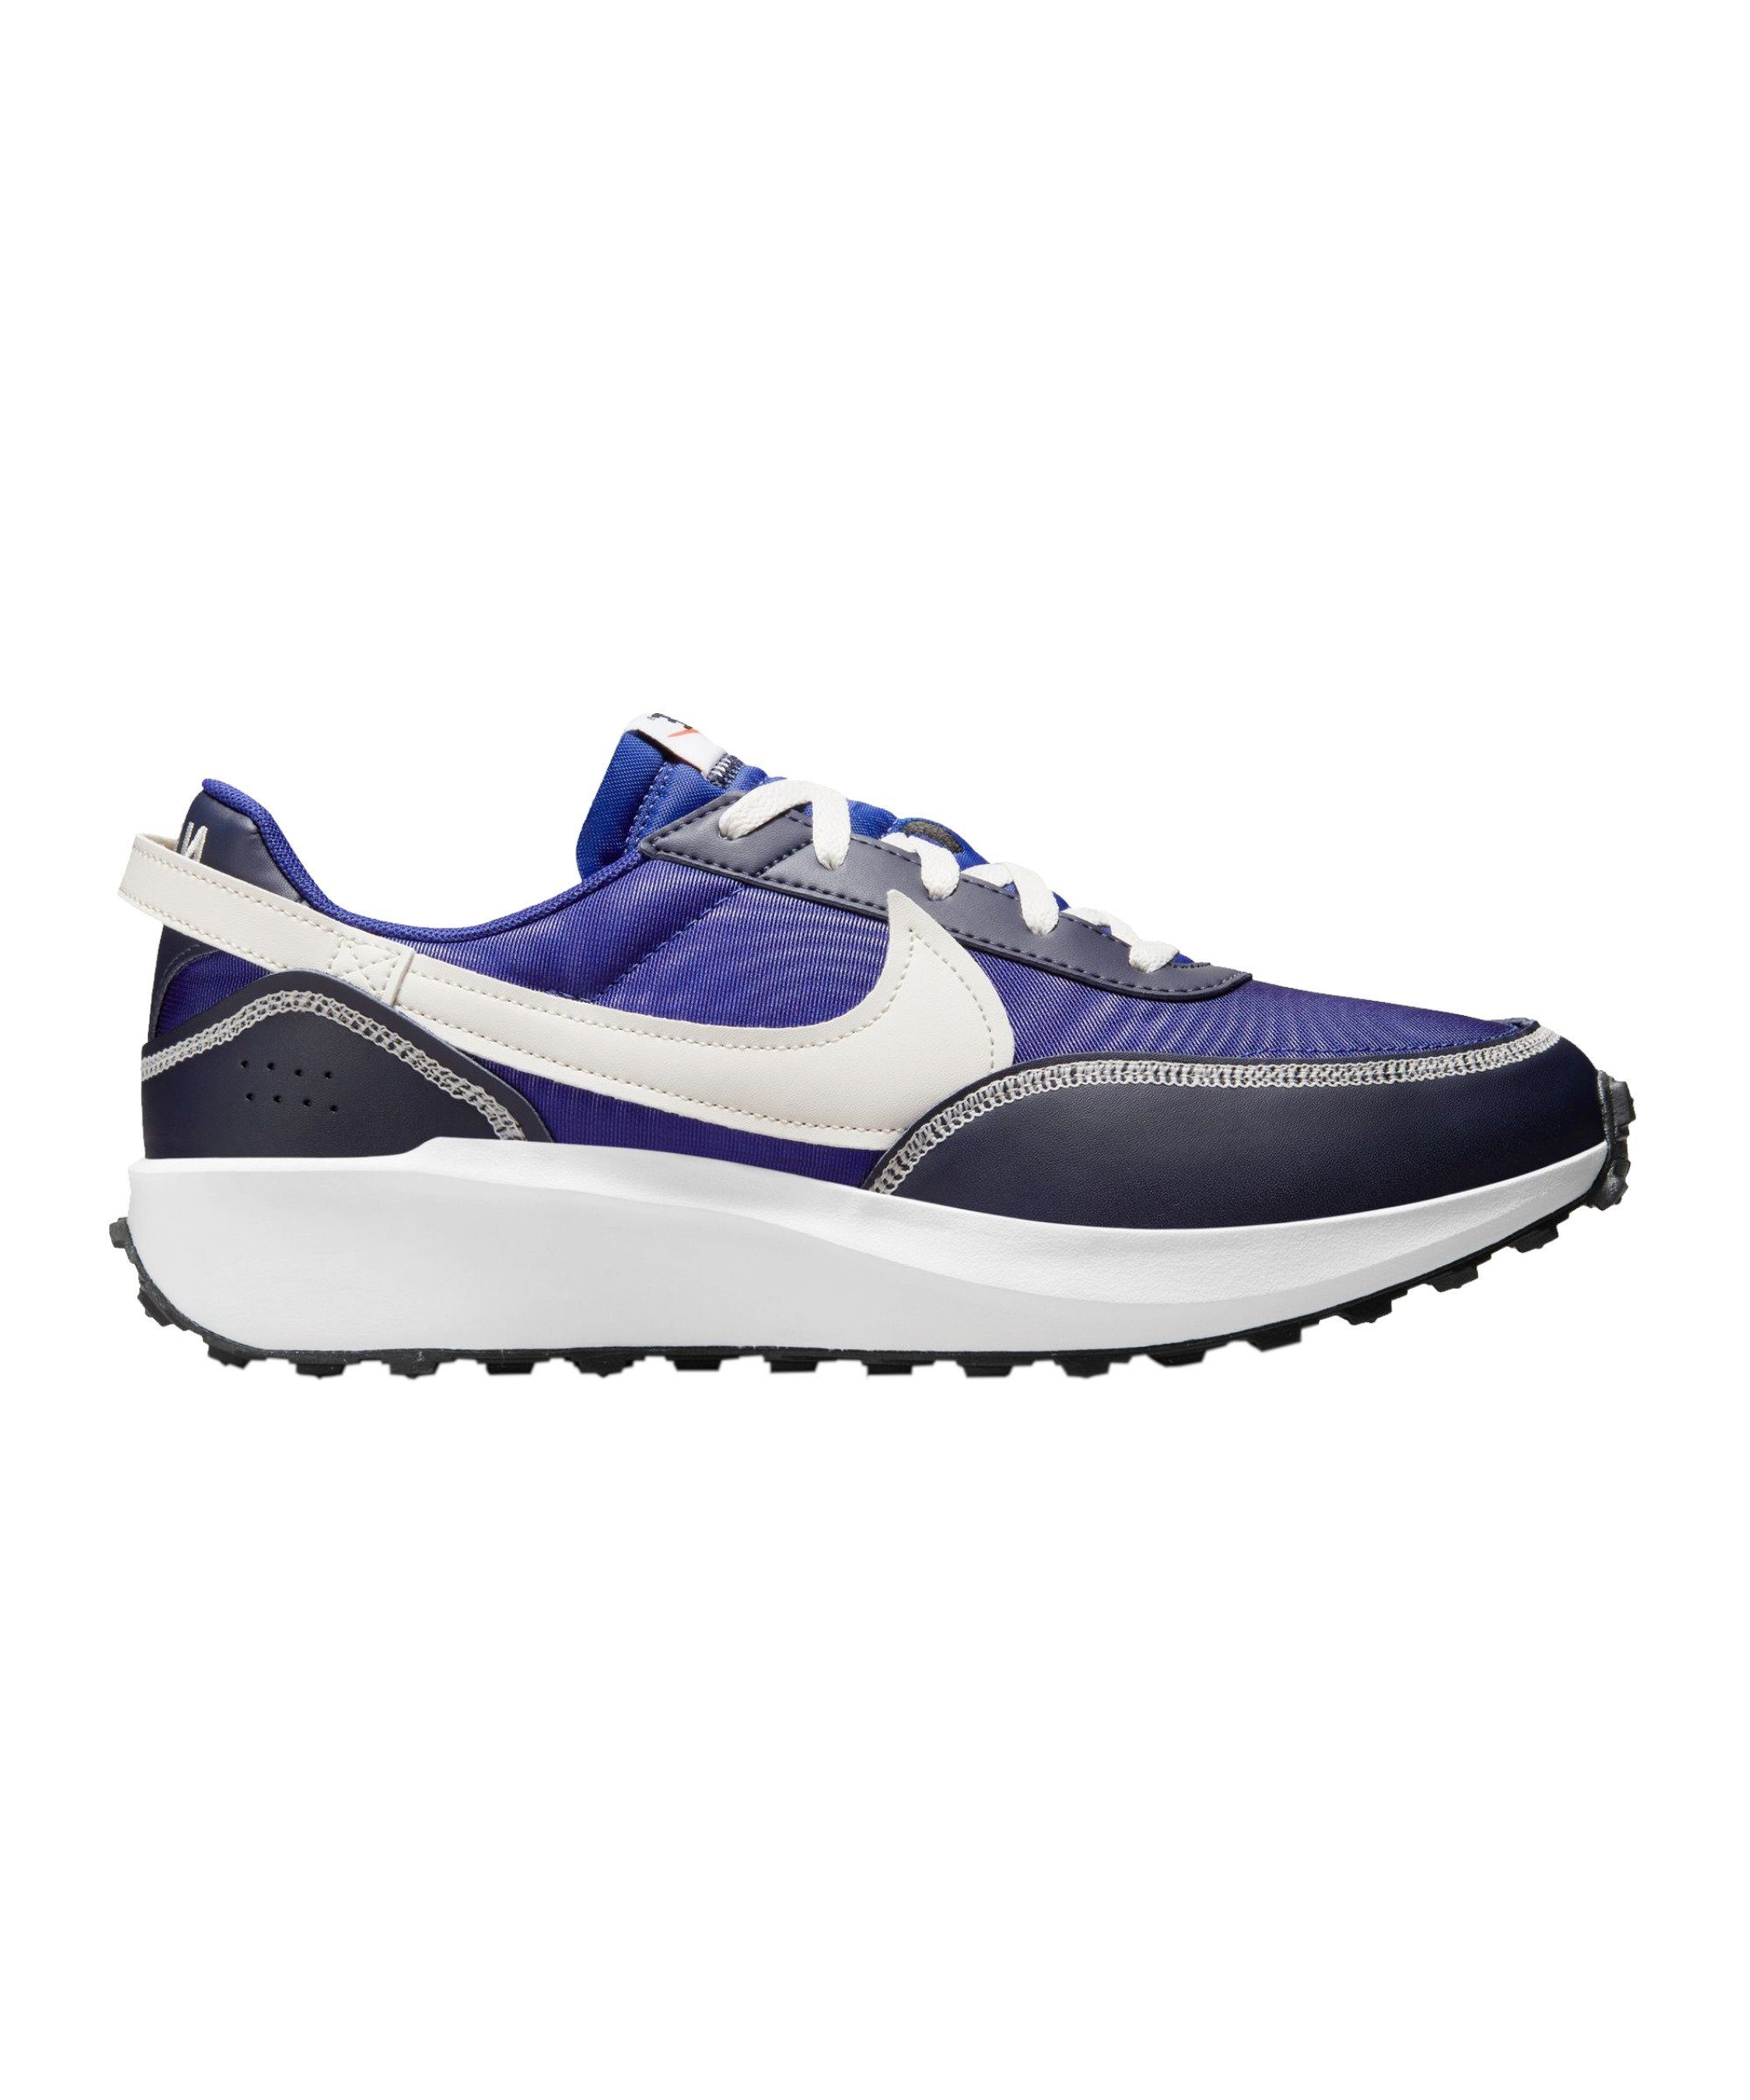 Blaue Nike Schuhe online kaufen | OTTO